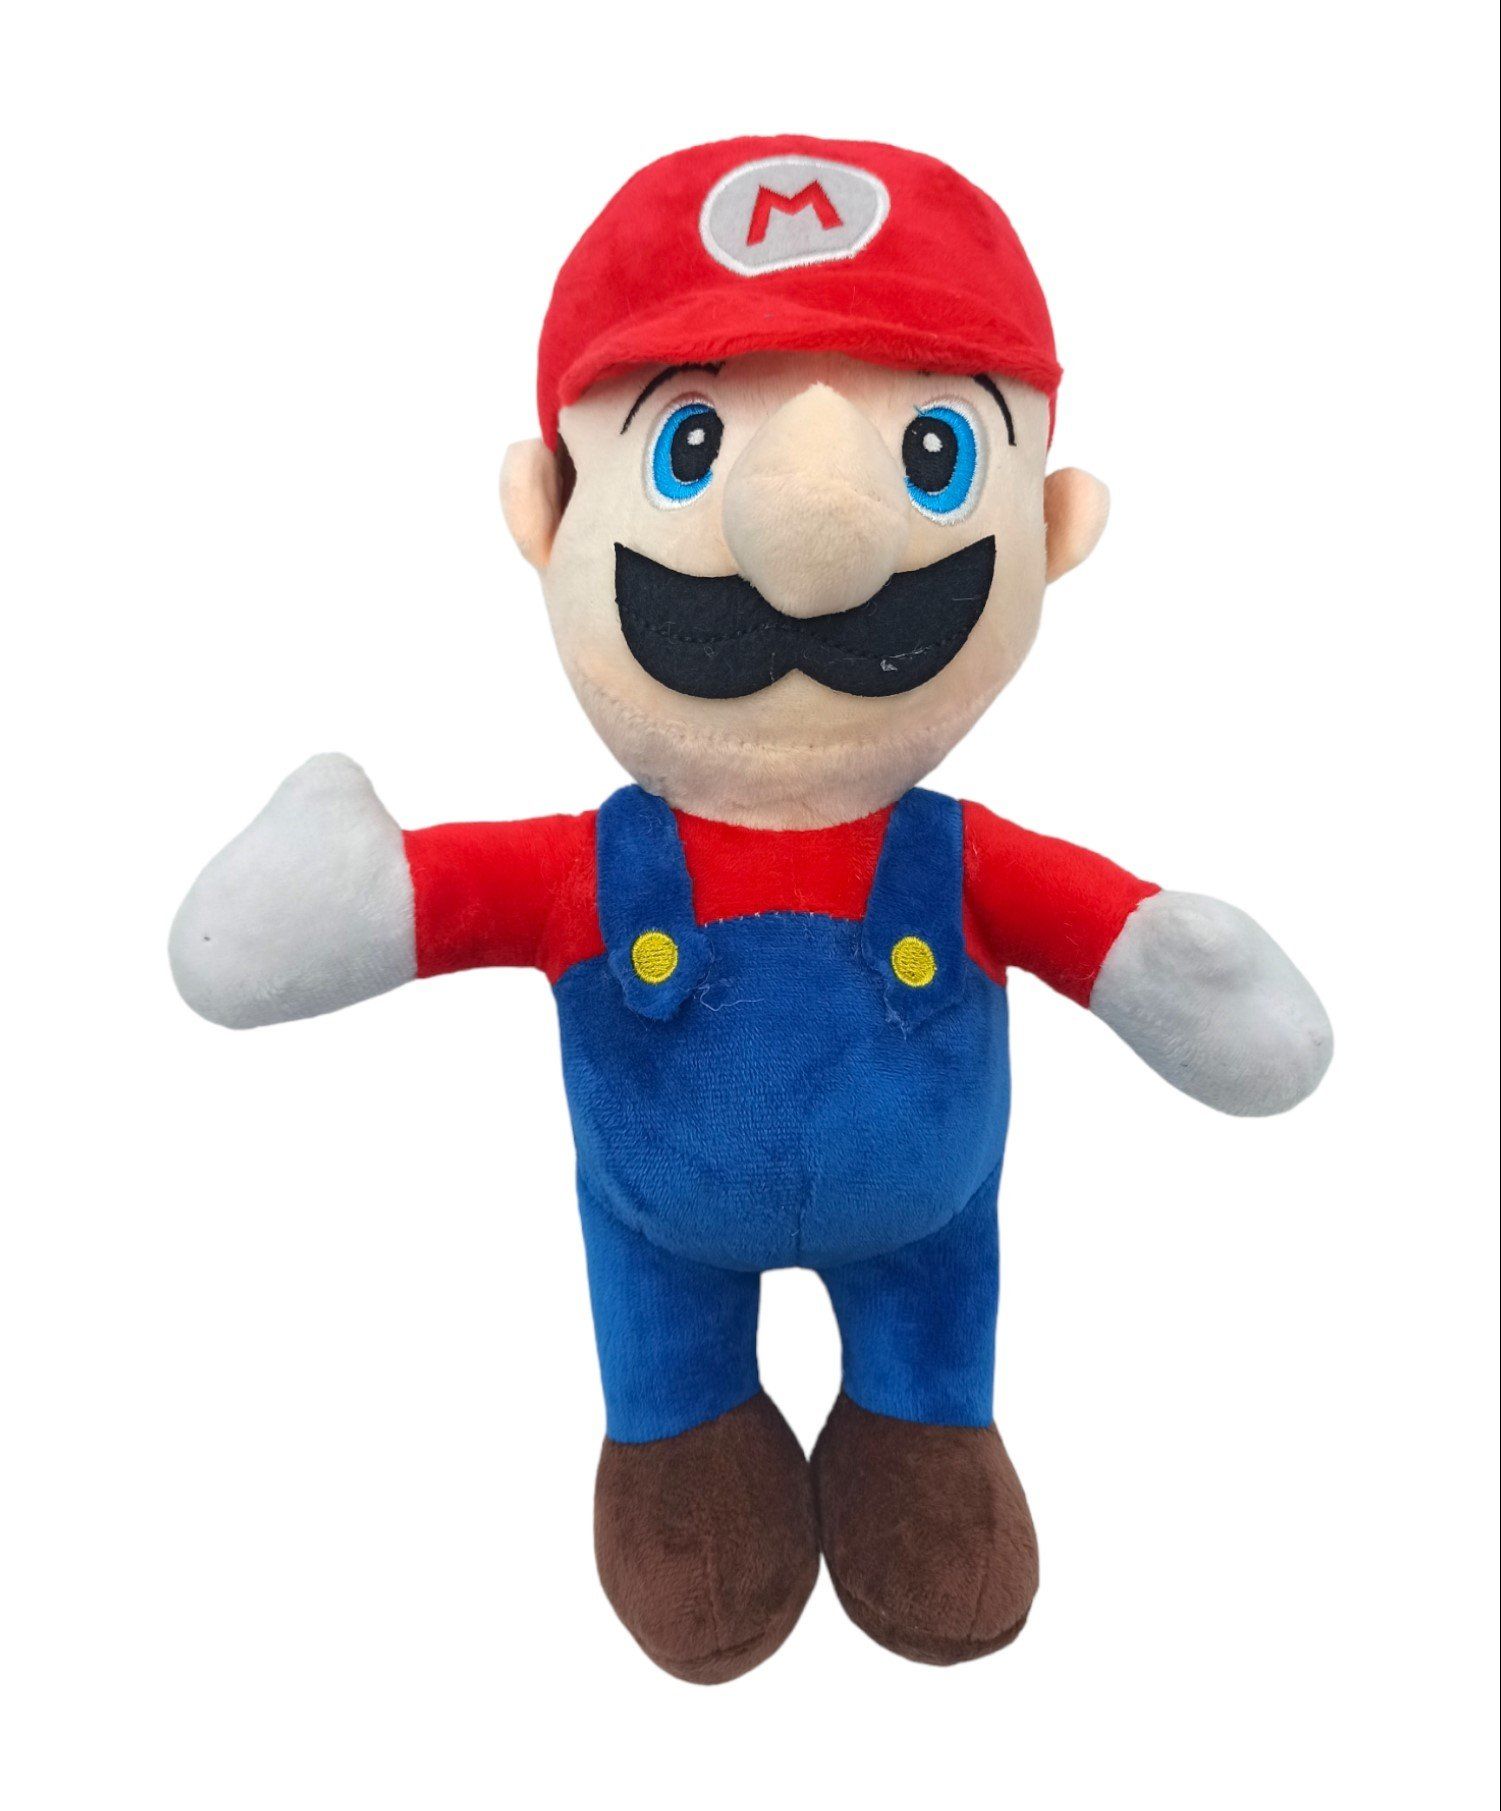 Süper Mario Oyuncakları Peluş Süper Mario Karakteri Peluş 30cm.